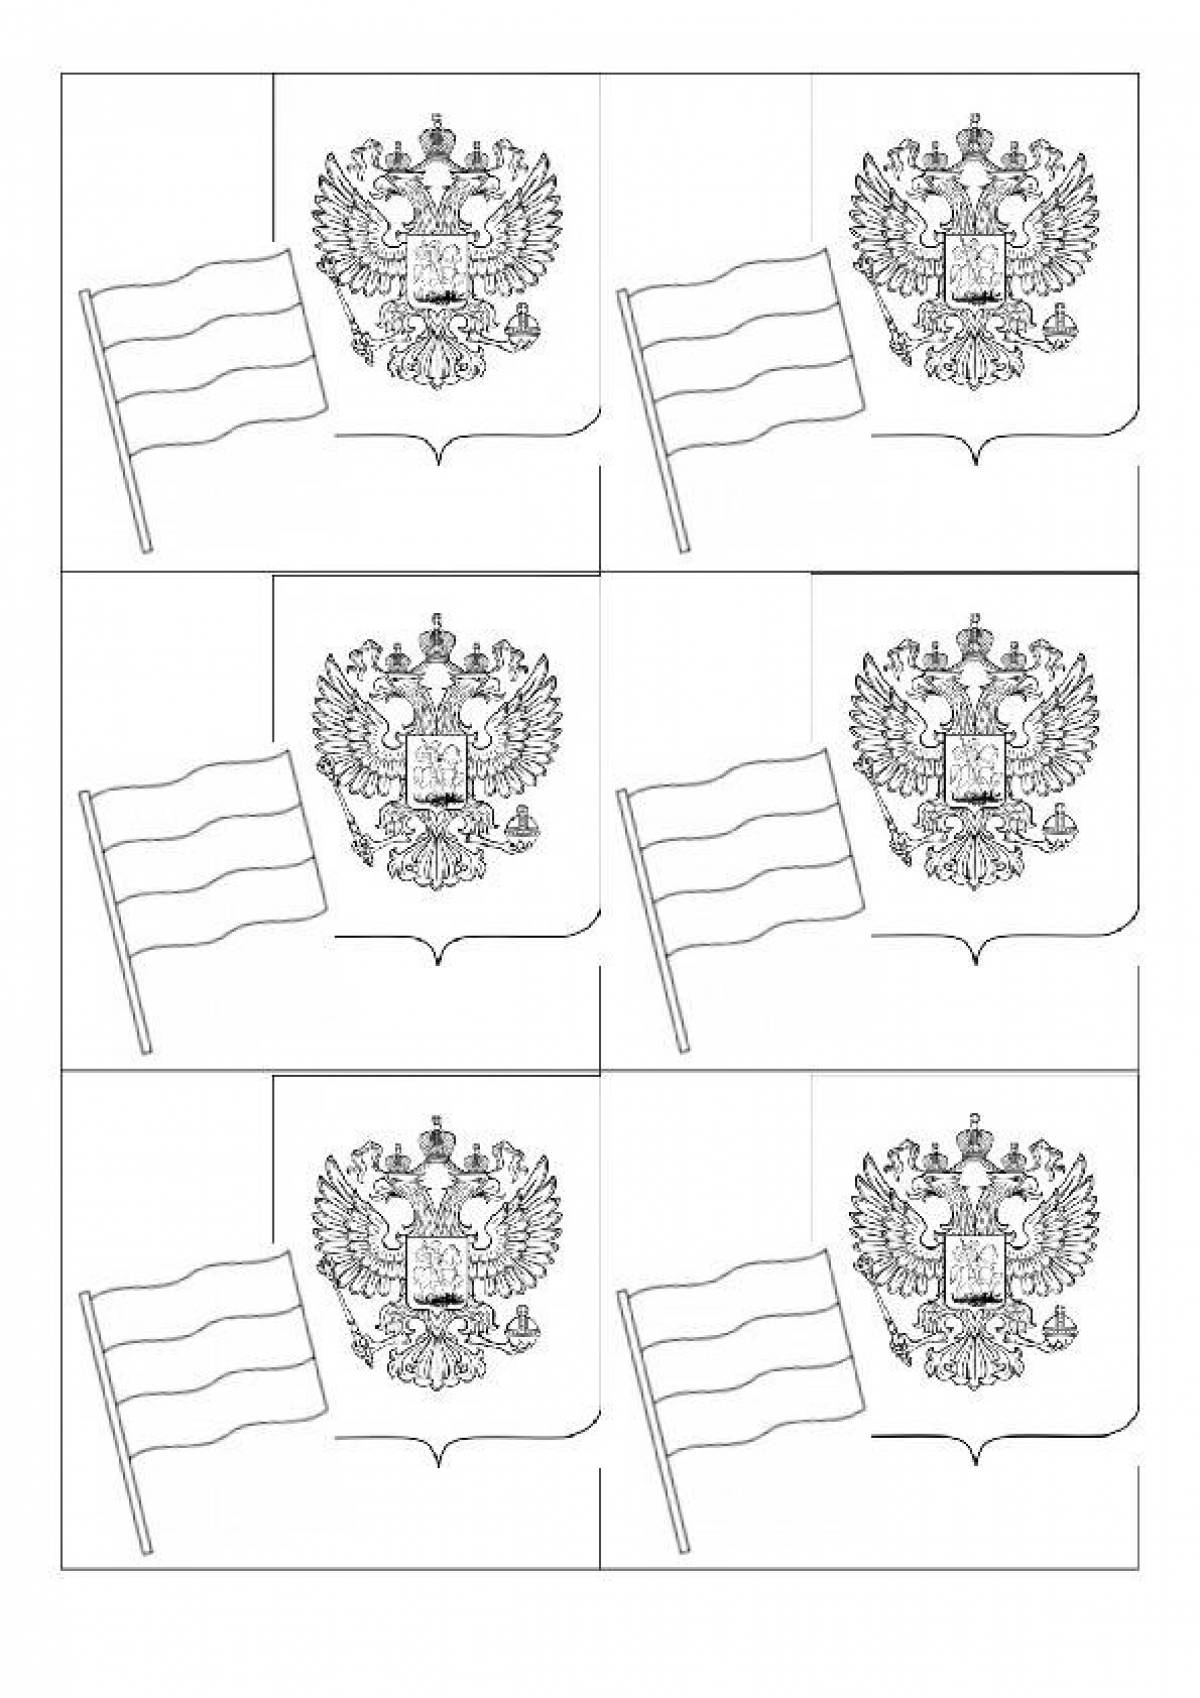 Герб и флаг России раскраска